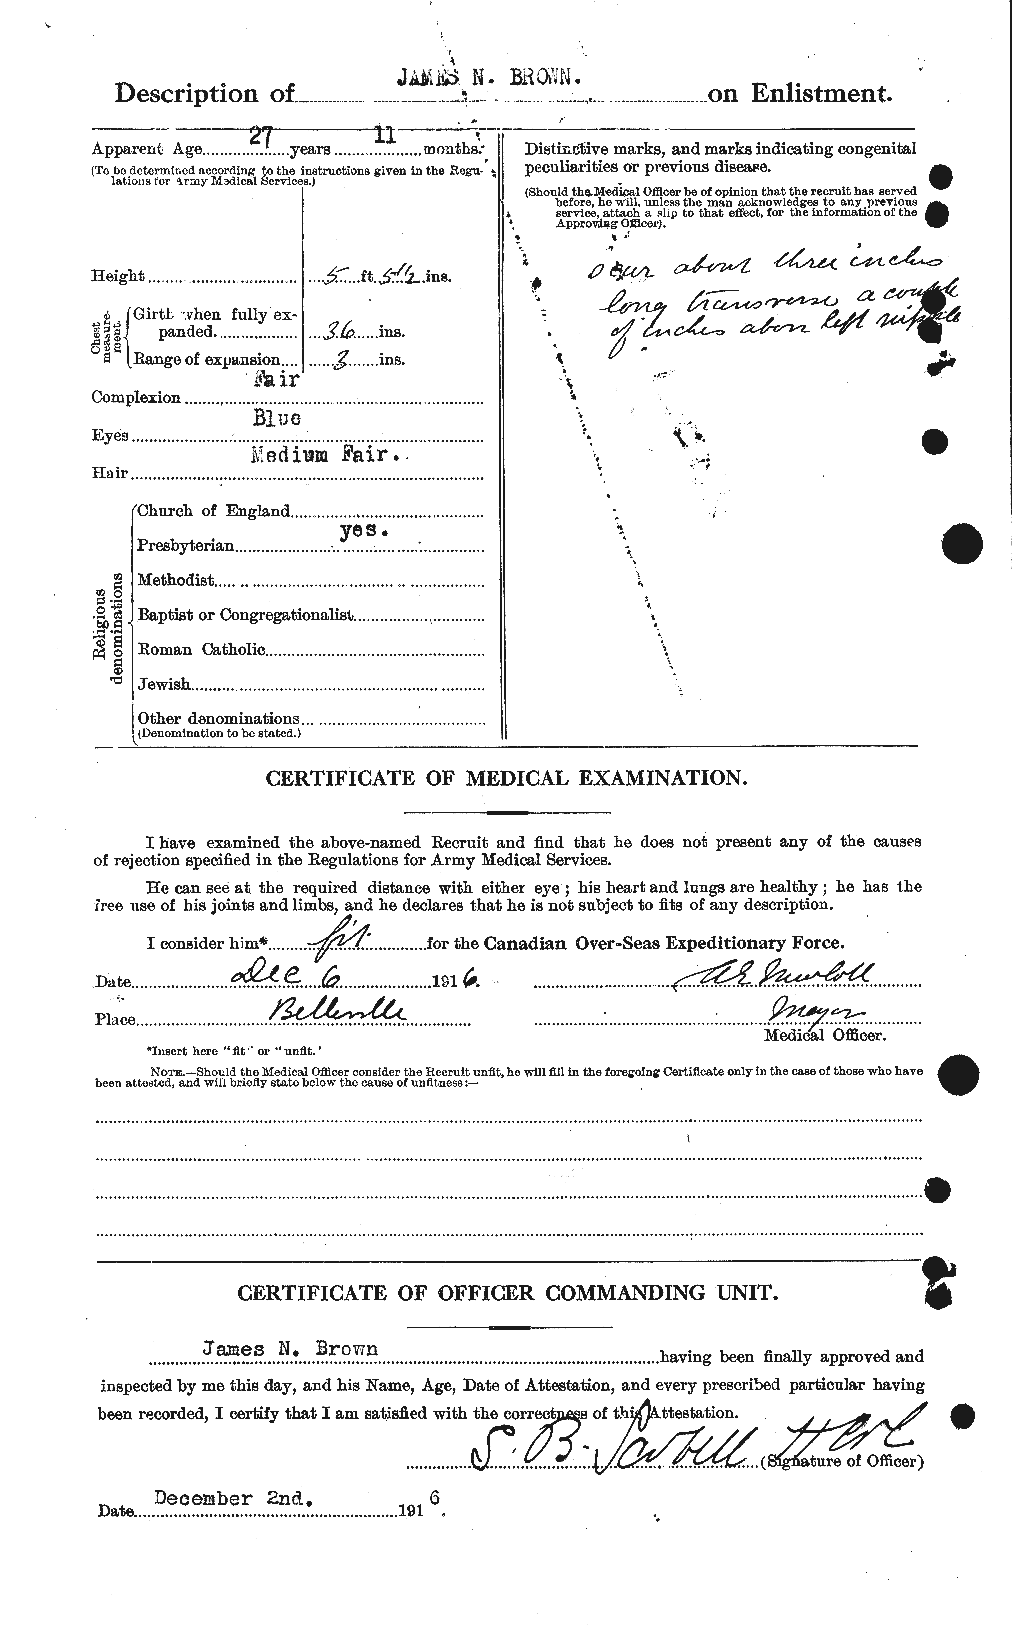 Dossiers du Personnel de la Première Guerre mondiale - CEC 269561b